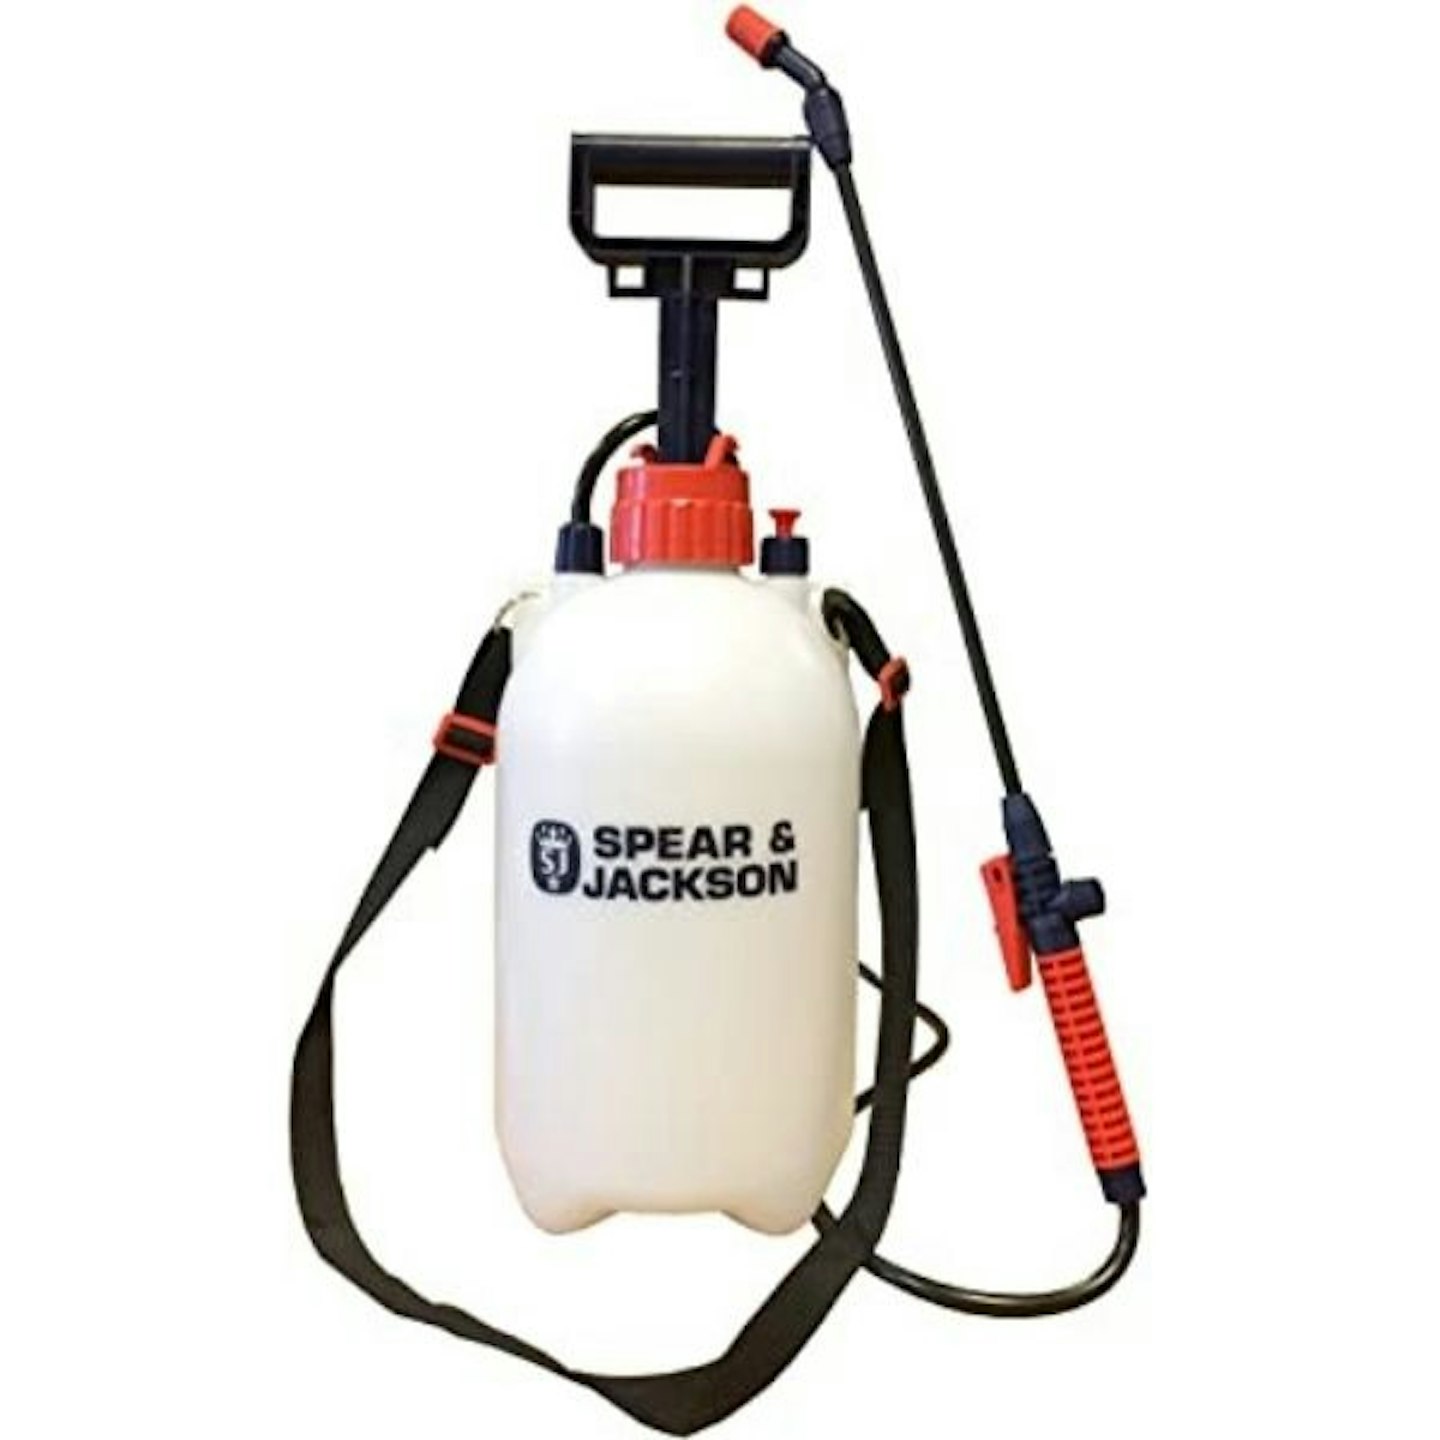 Spear & Jackson Pump Action Pressure Sprayer